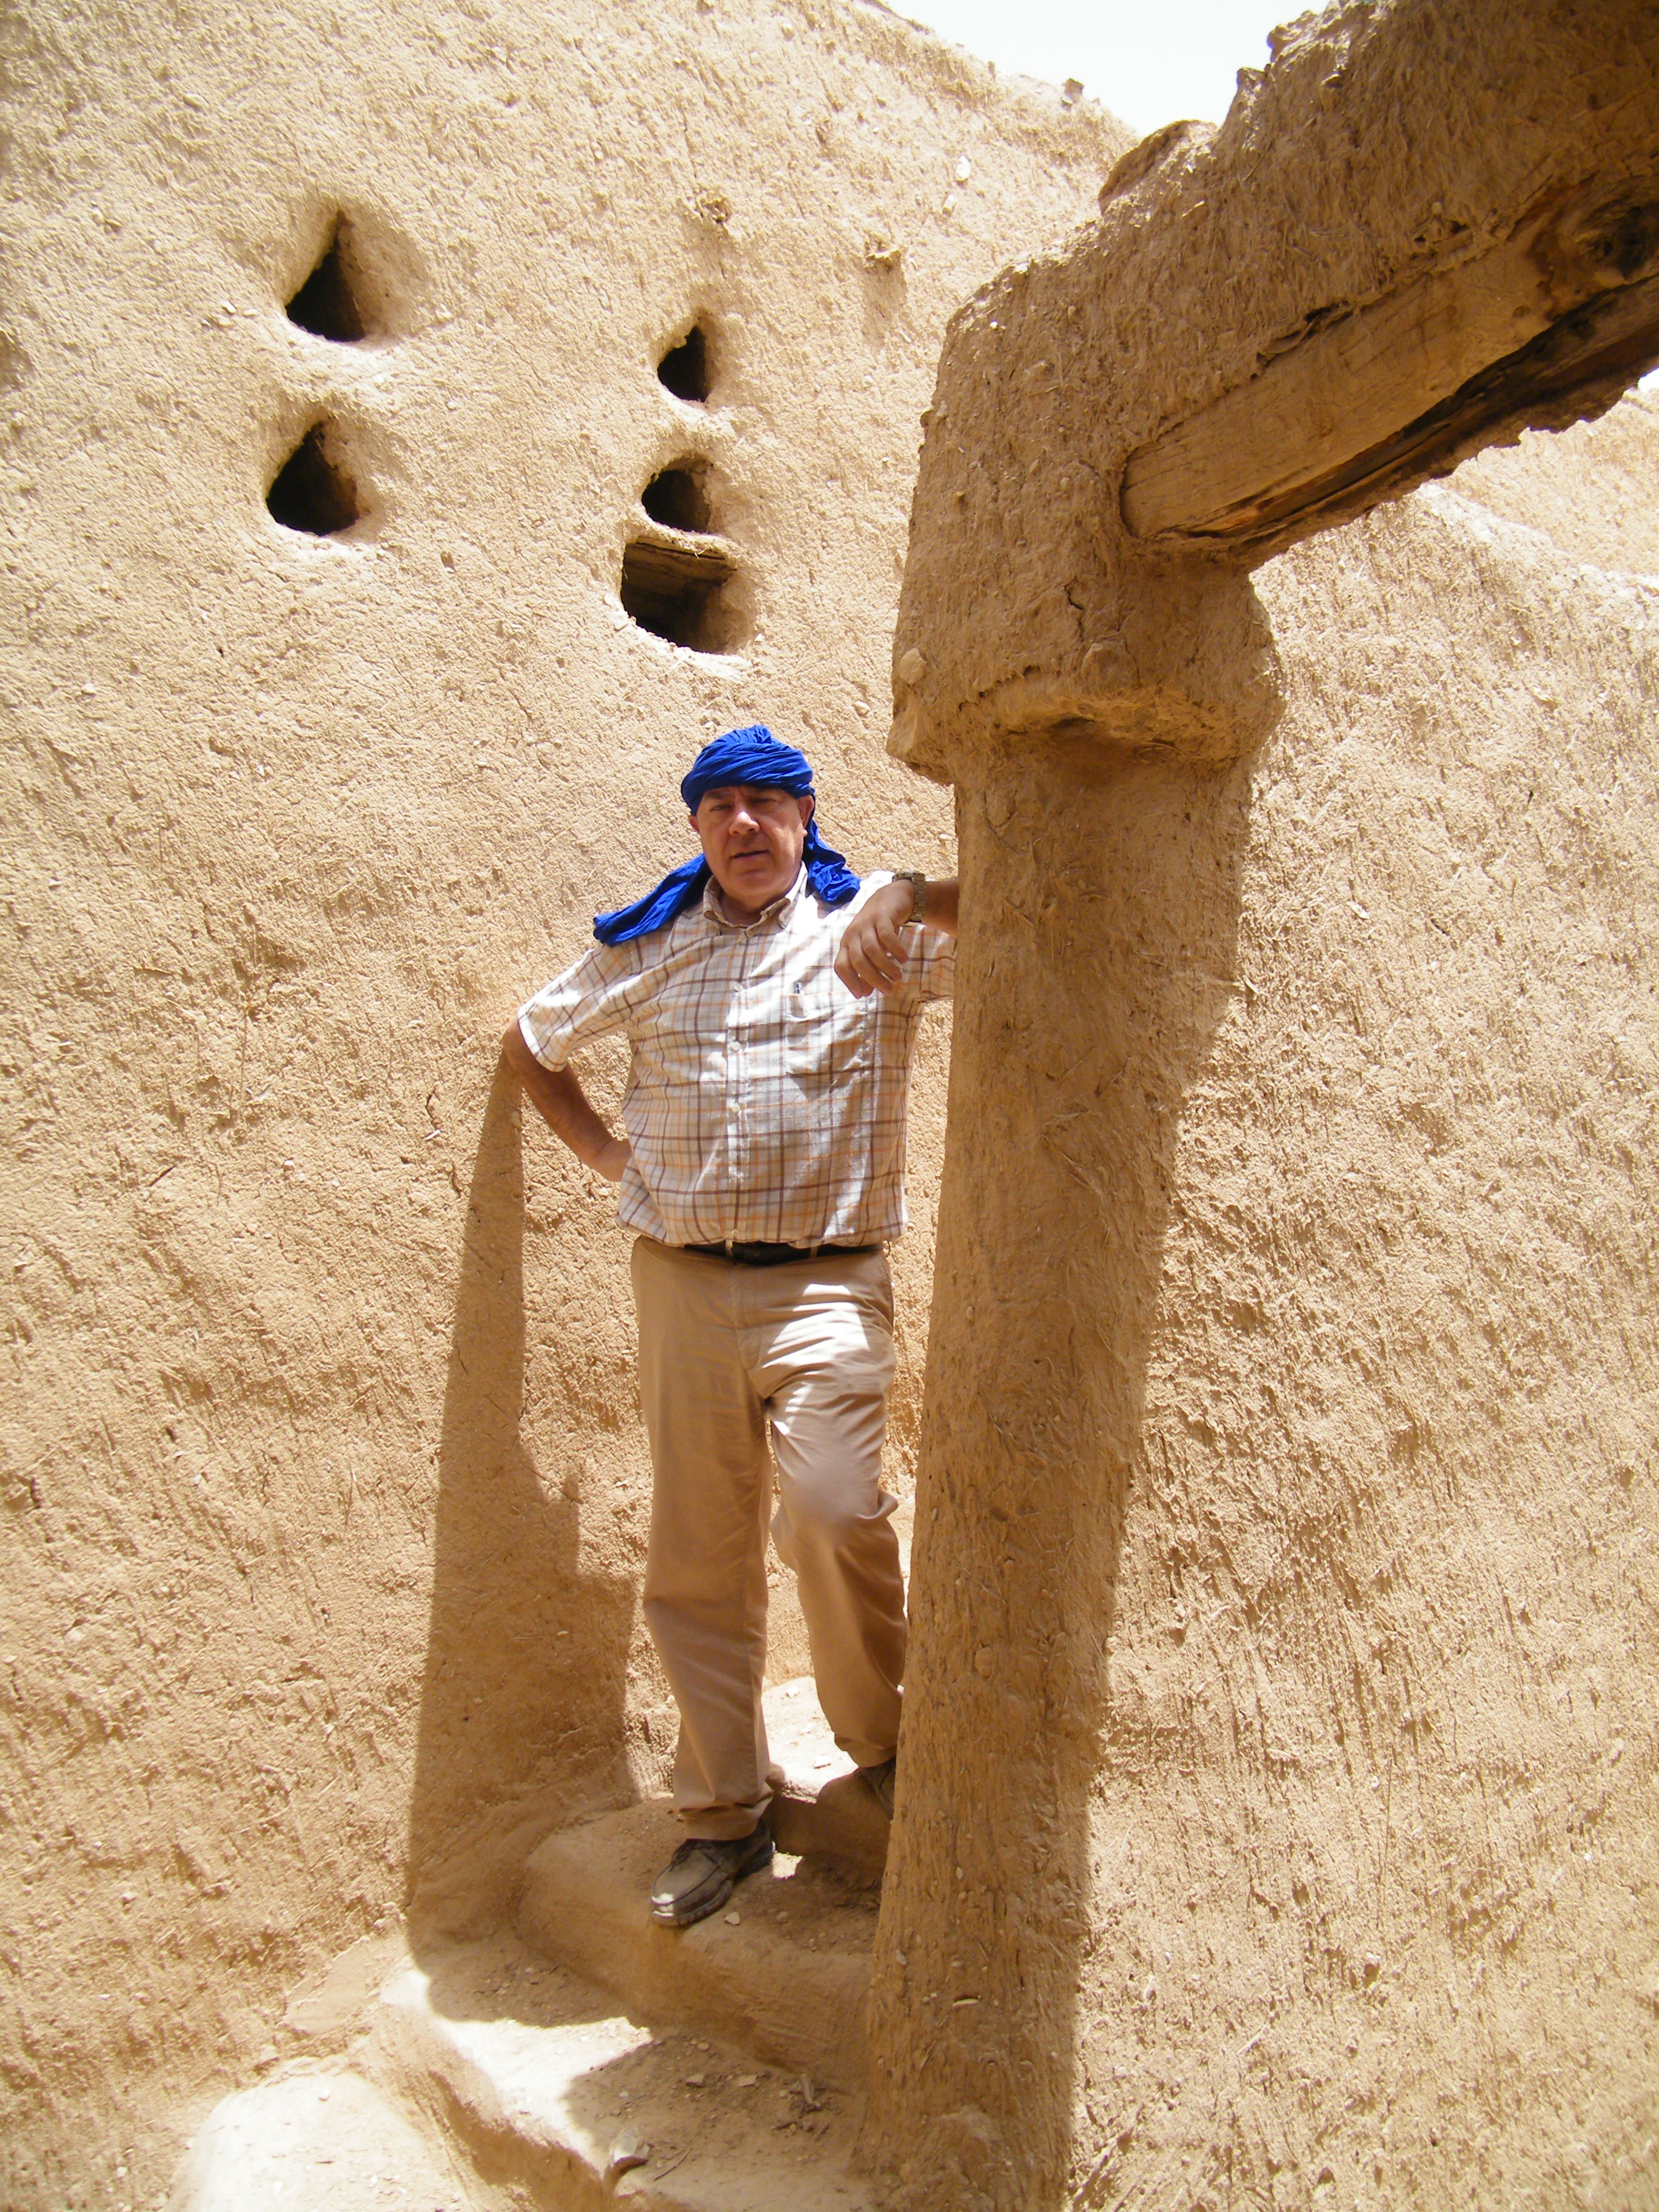 Intervención arqueológica en el Barrio de Samhane. Ad-Dariya (Riad. Arabia Saudí). 2012